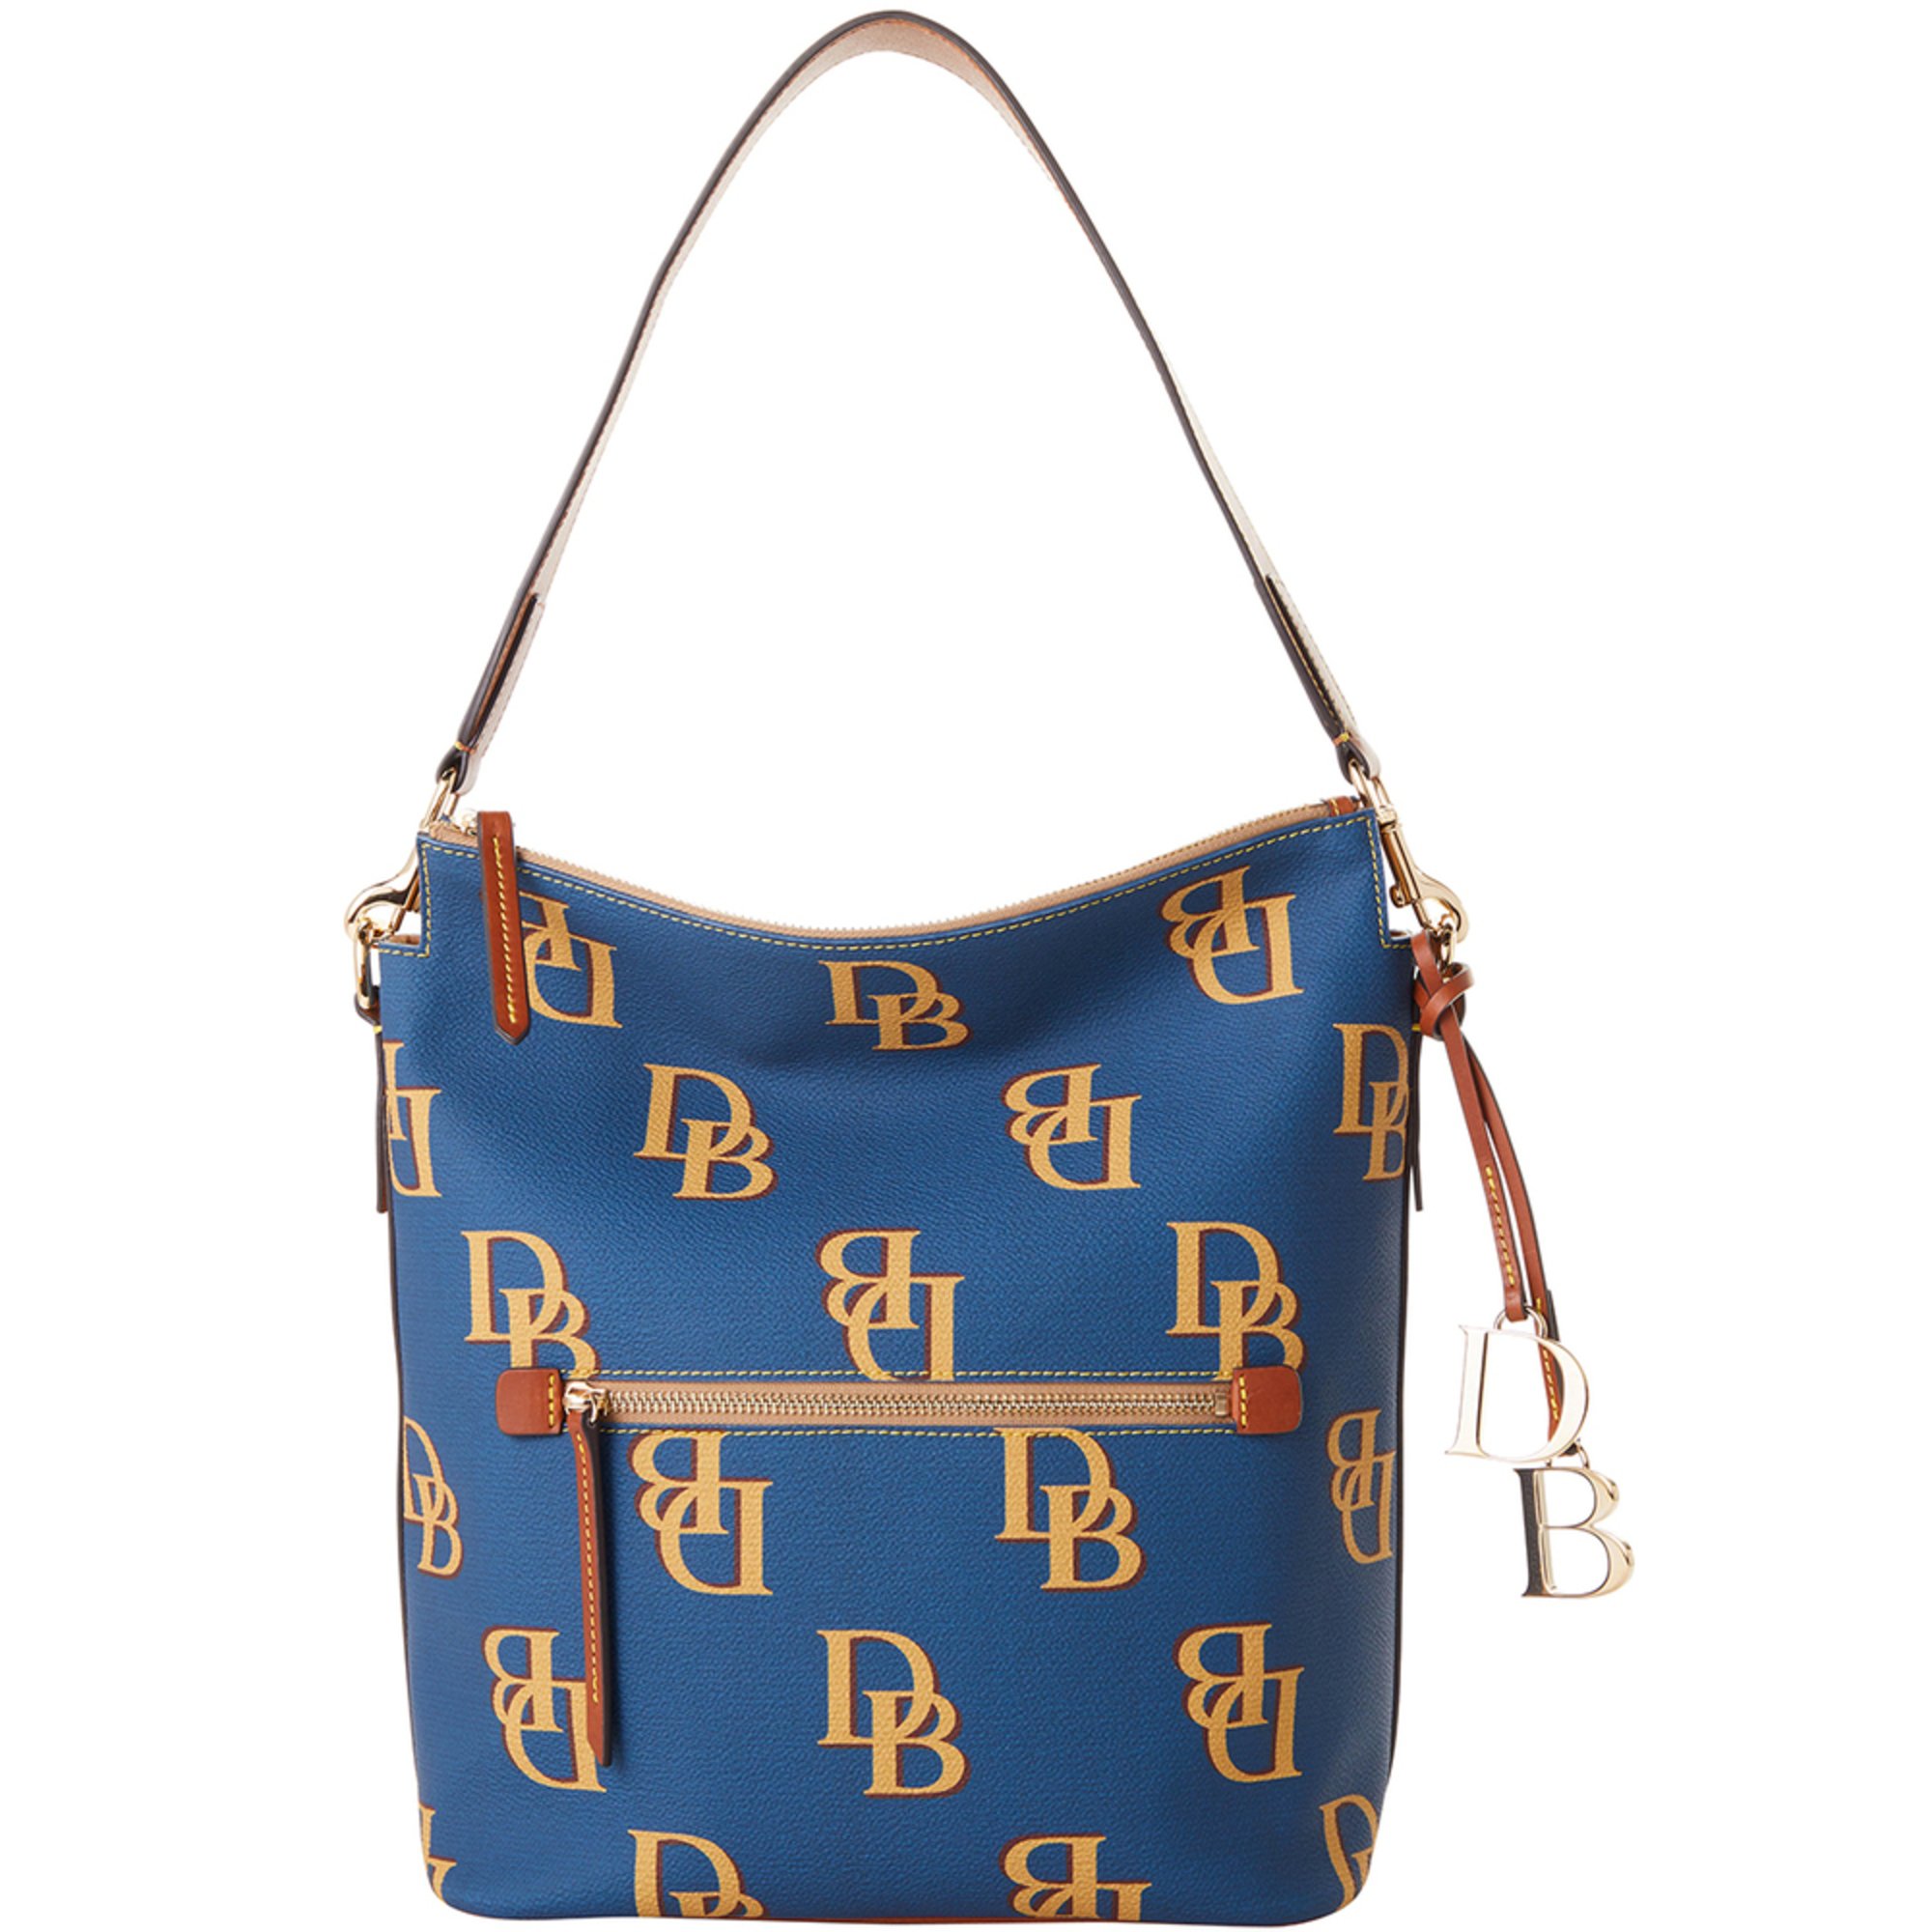 Dooney Bourke Monogram Sac Hobo | Hobo Bags | Accessories - Shop Your ...